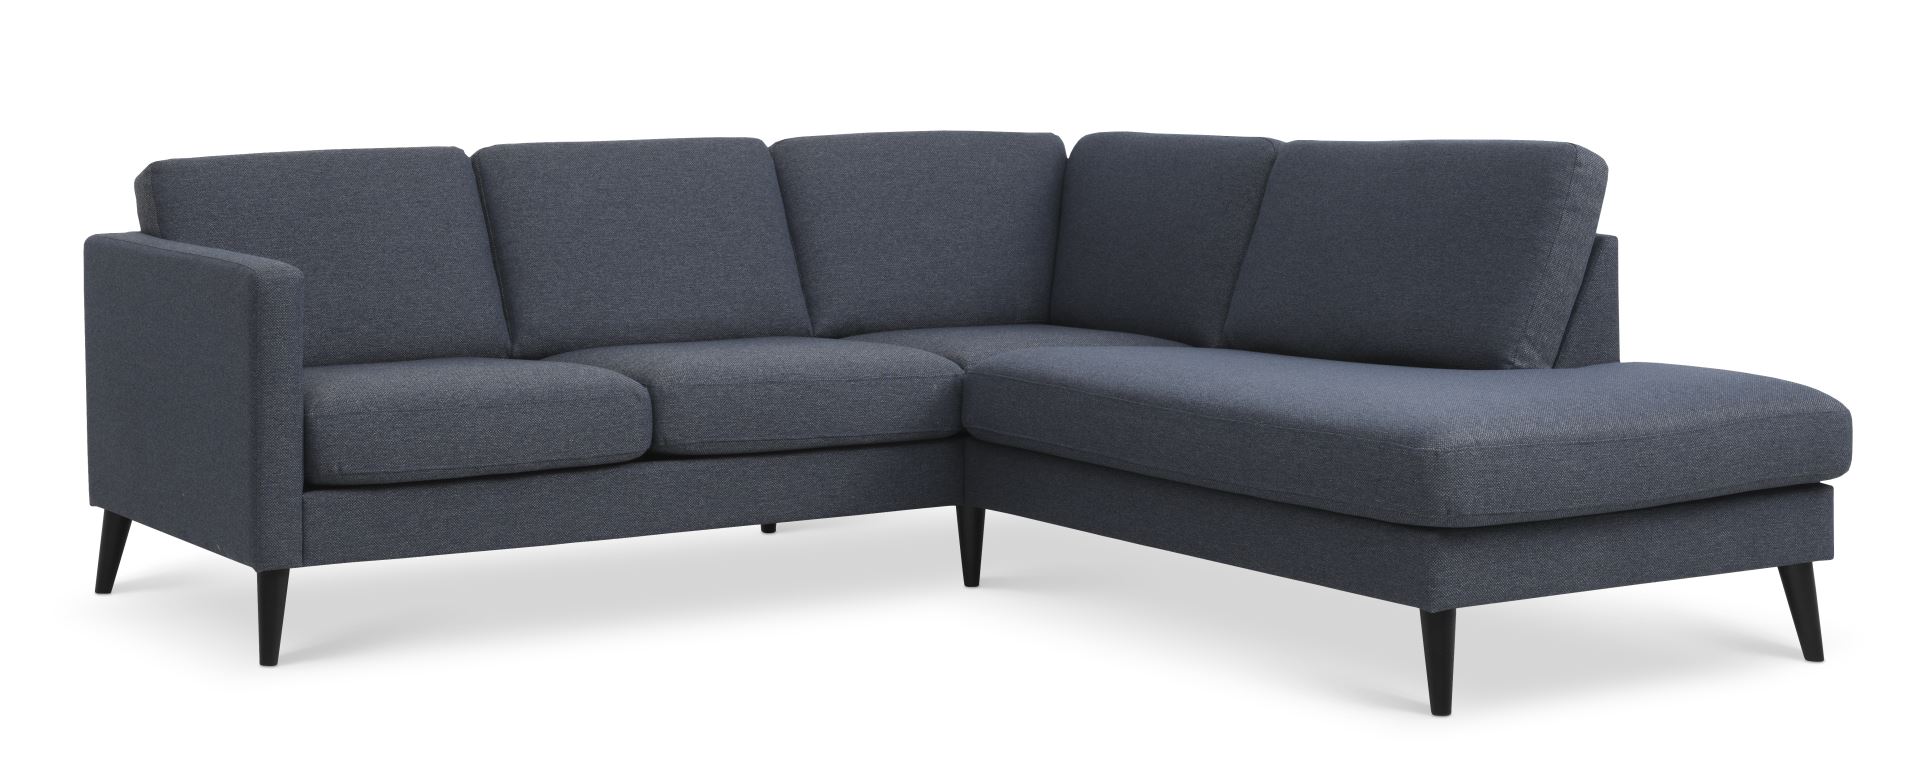 Ask sæt 53 lille OE sofa, m. højre chaiselong - navy blå polyester stof og sort træ